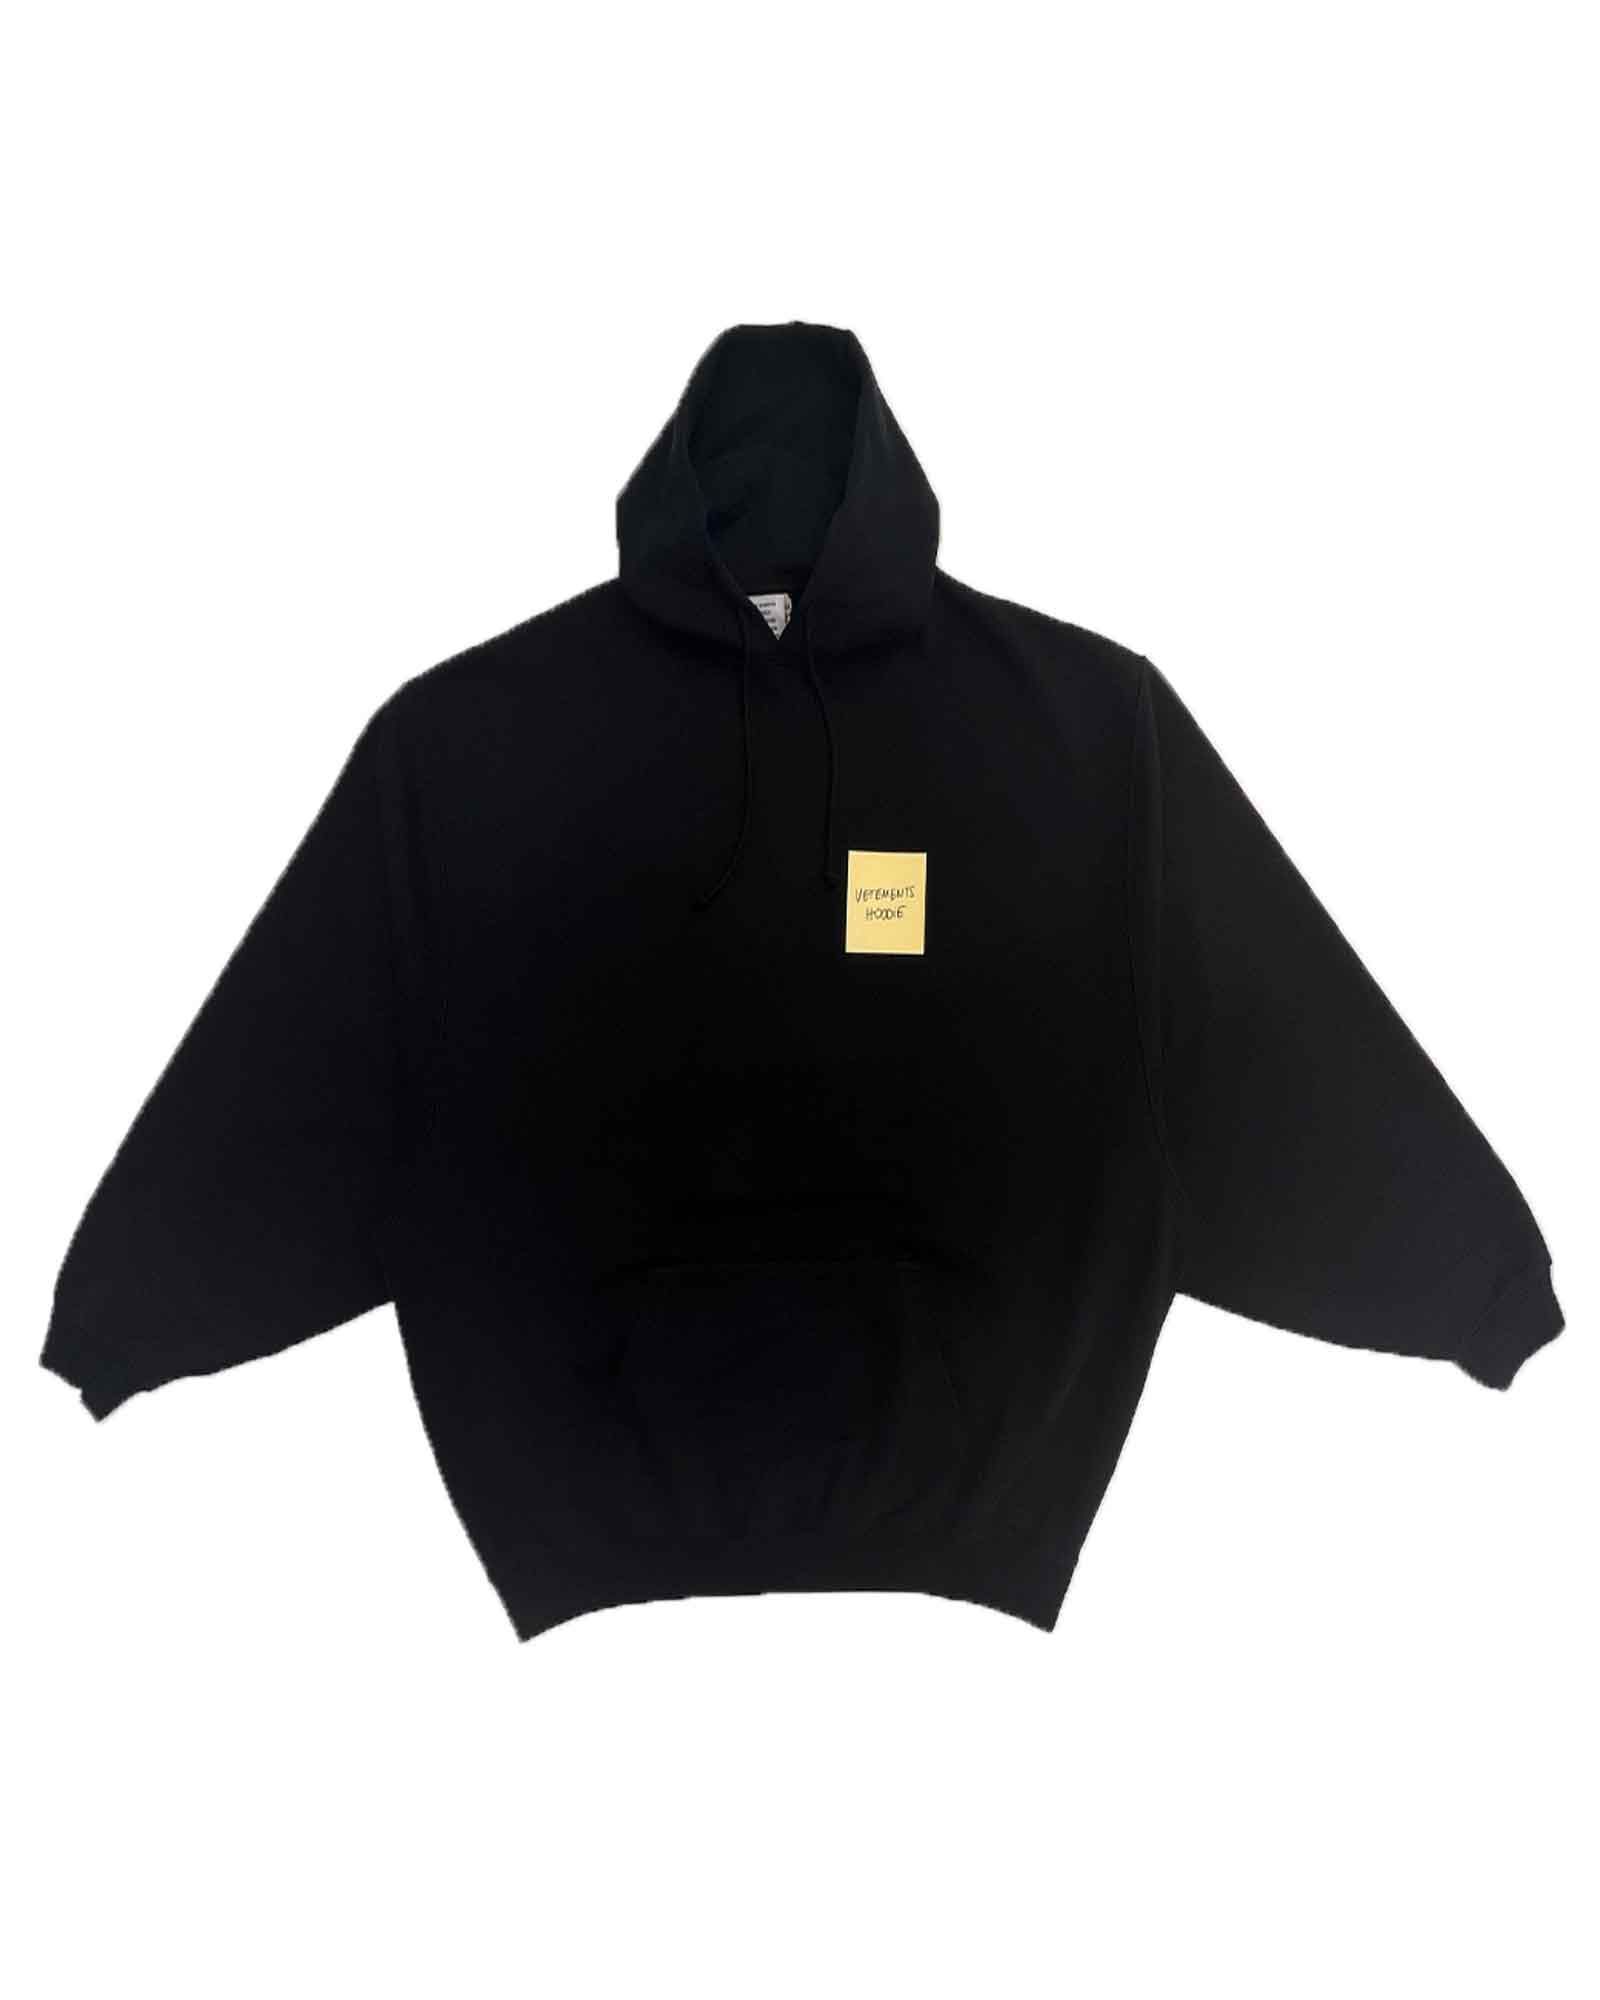 ヴェトモン/Limited edition crystal logo hoodie/プルオーバーパーカー/Black - XS